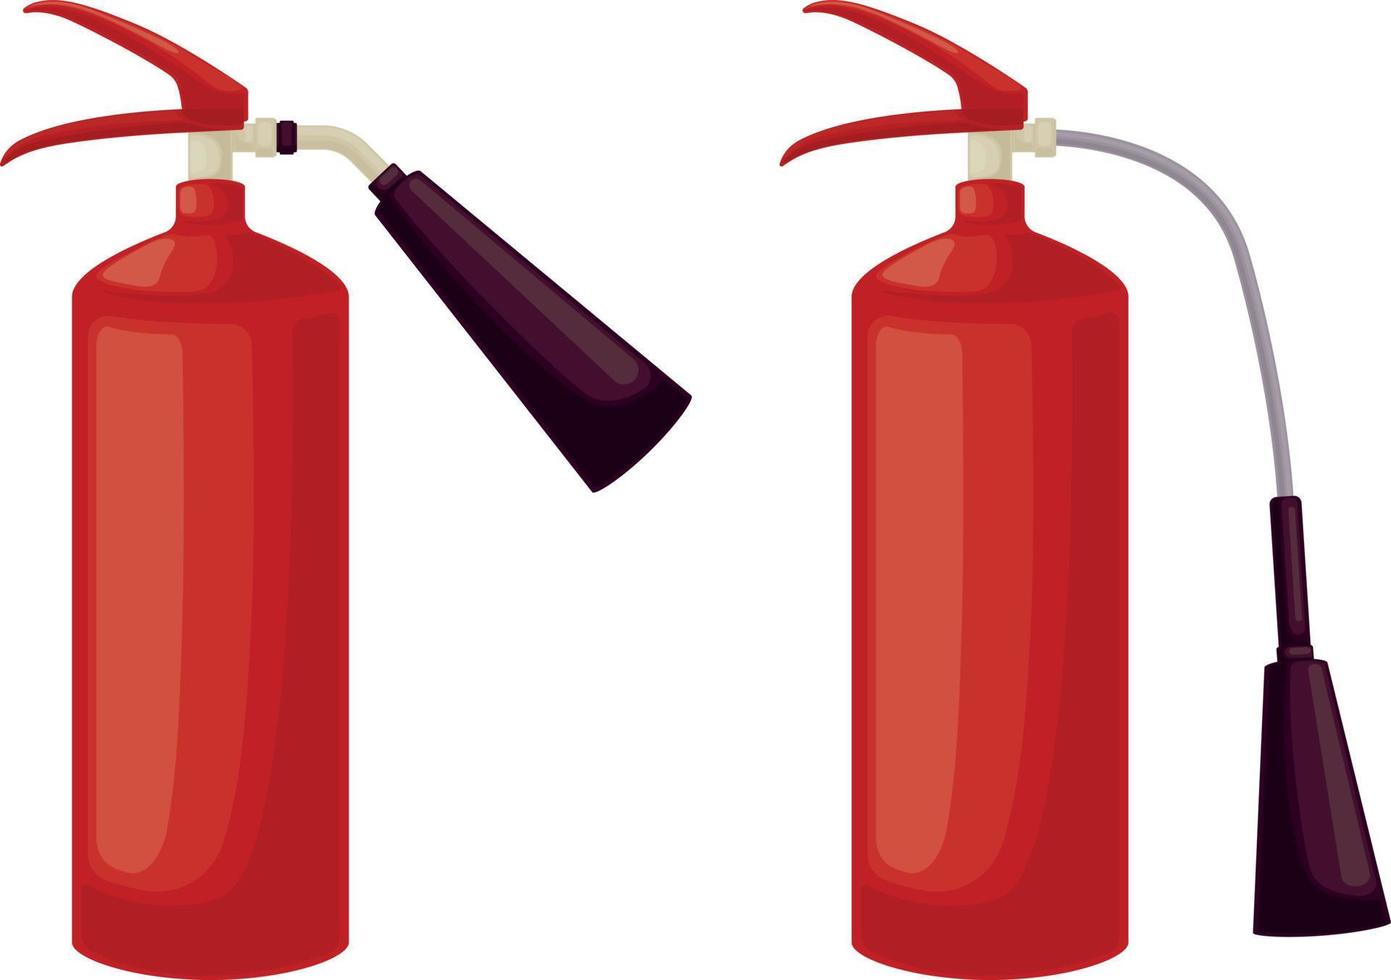 extincteurs. deux extincteurs. accessoires pour l'extinction des incendies. illustration vectorielle isolée sur fond blanc. vecteur